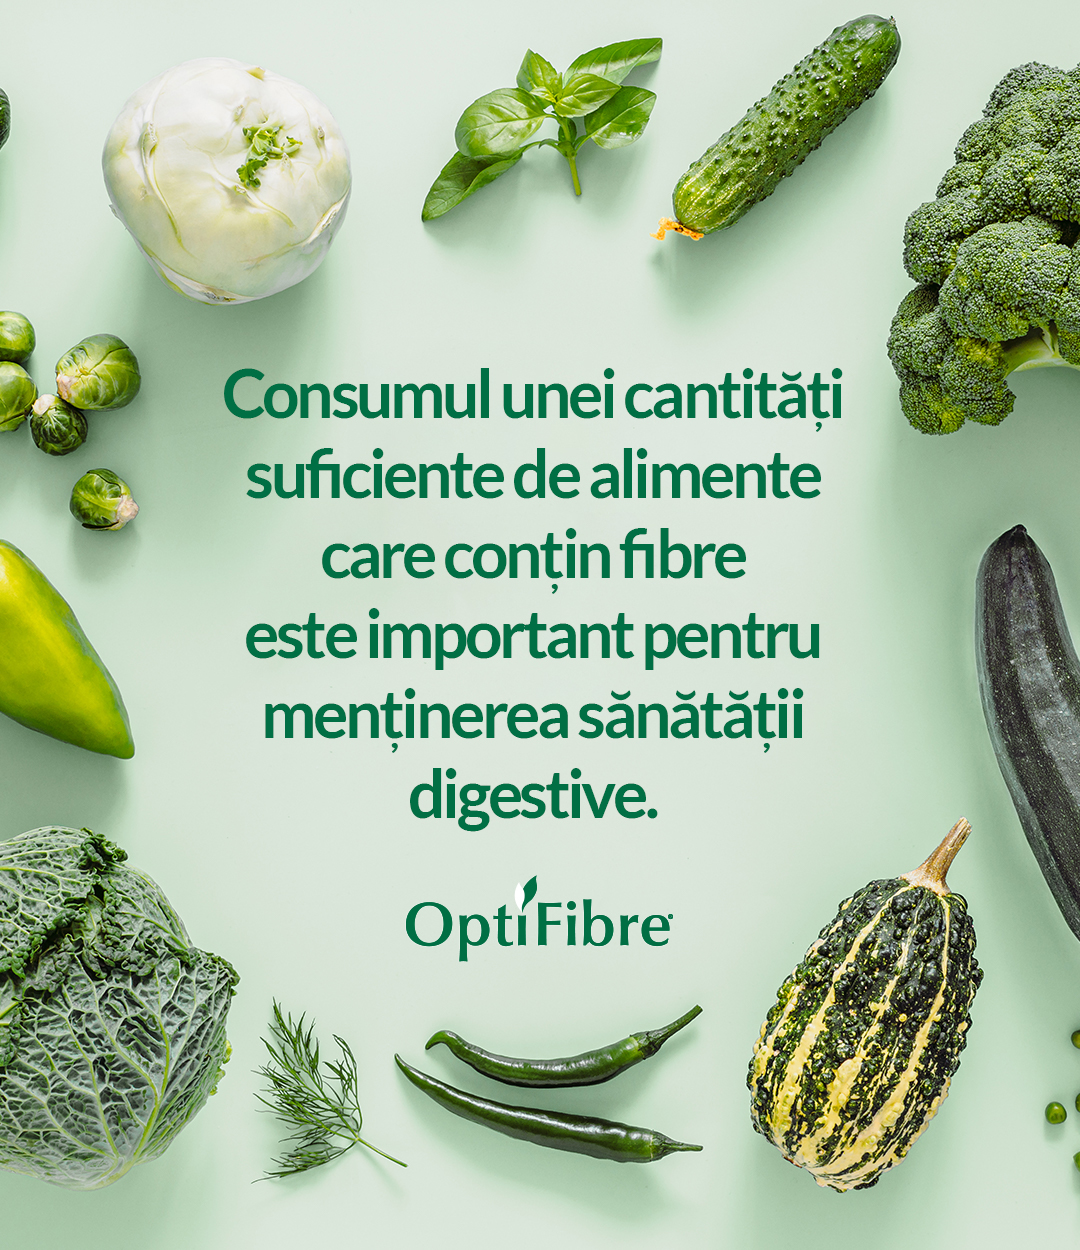 Desfășurat sub îndrumarea Societății de Nutriție din România, un studiu arată că 9 din 10 români nu știu care este cantitatea zilnică recomandată de fibre